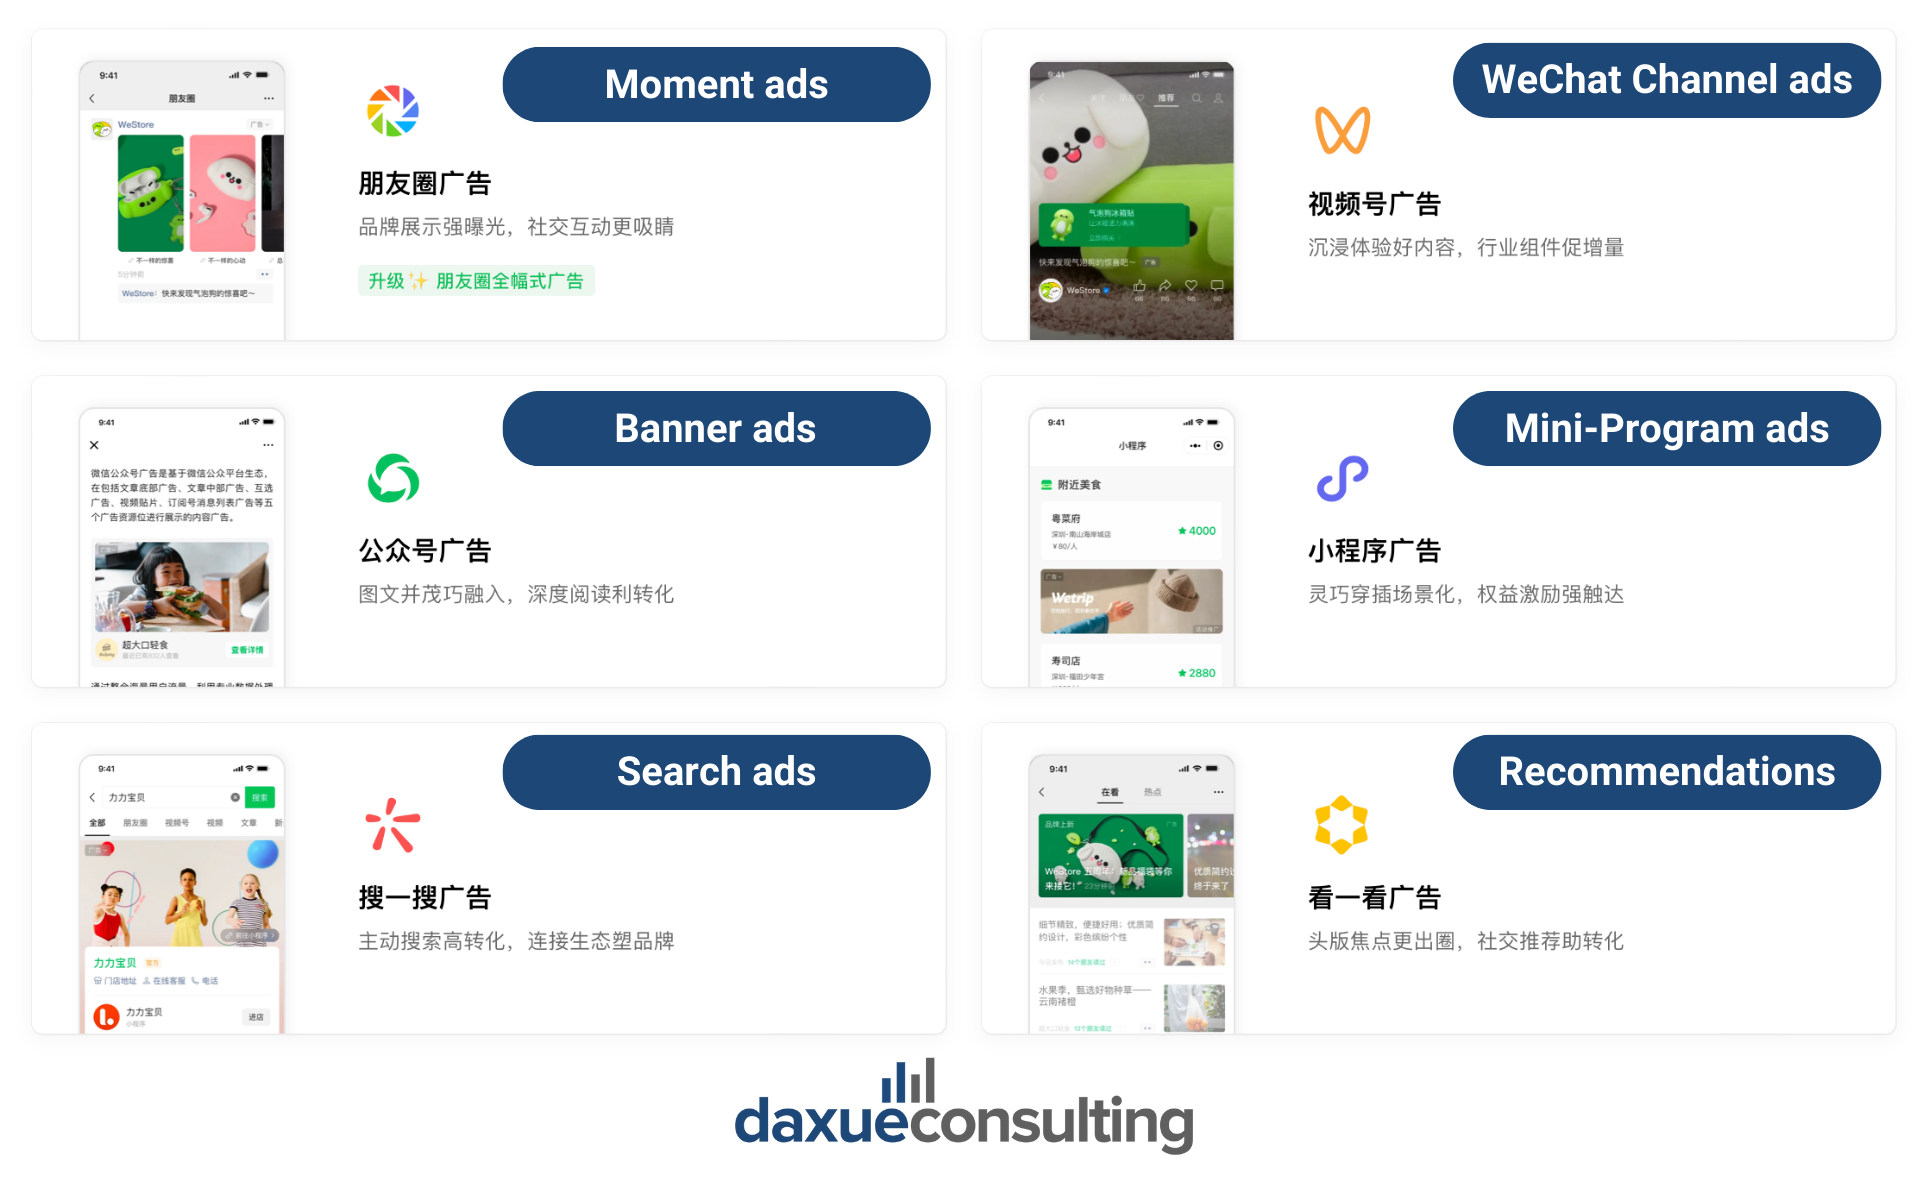 WeChat advertising platform